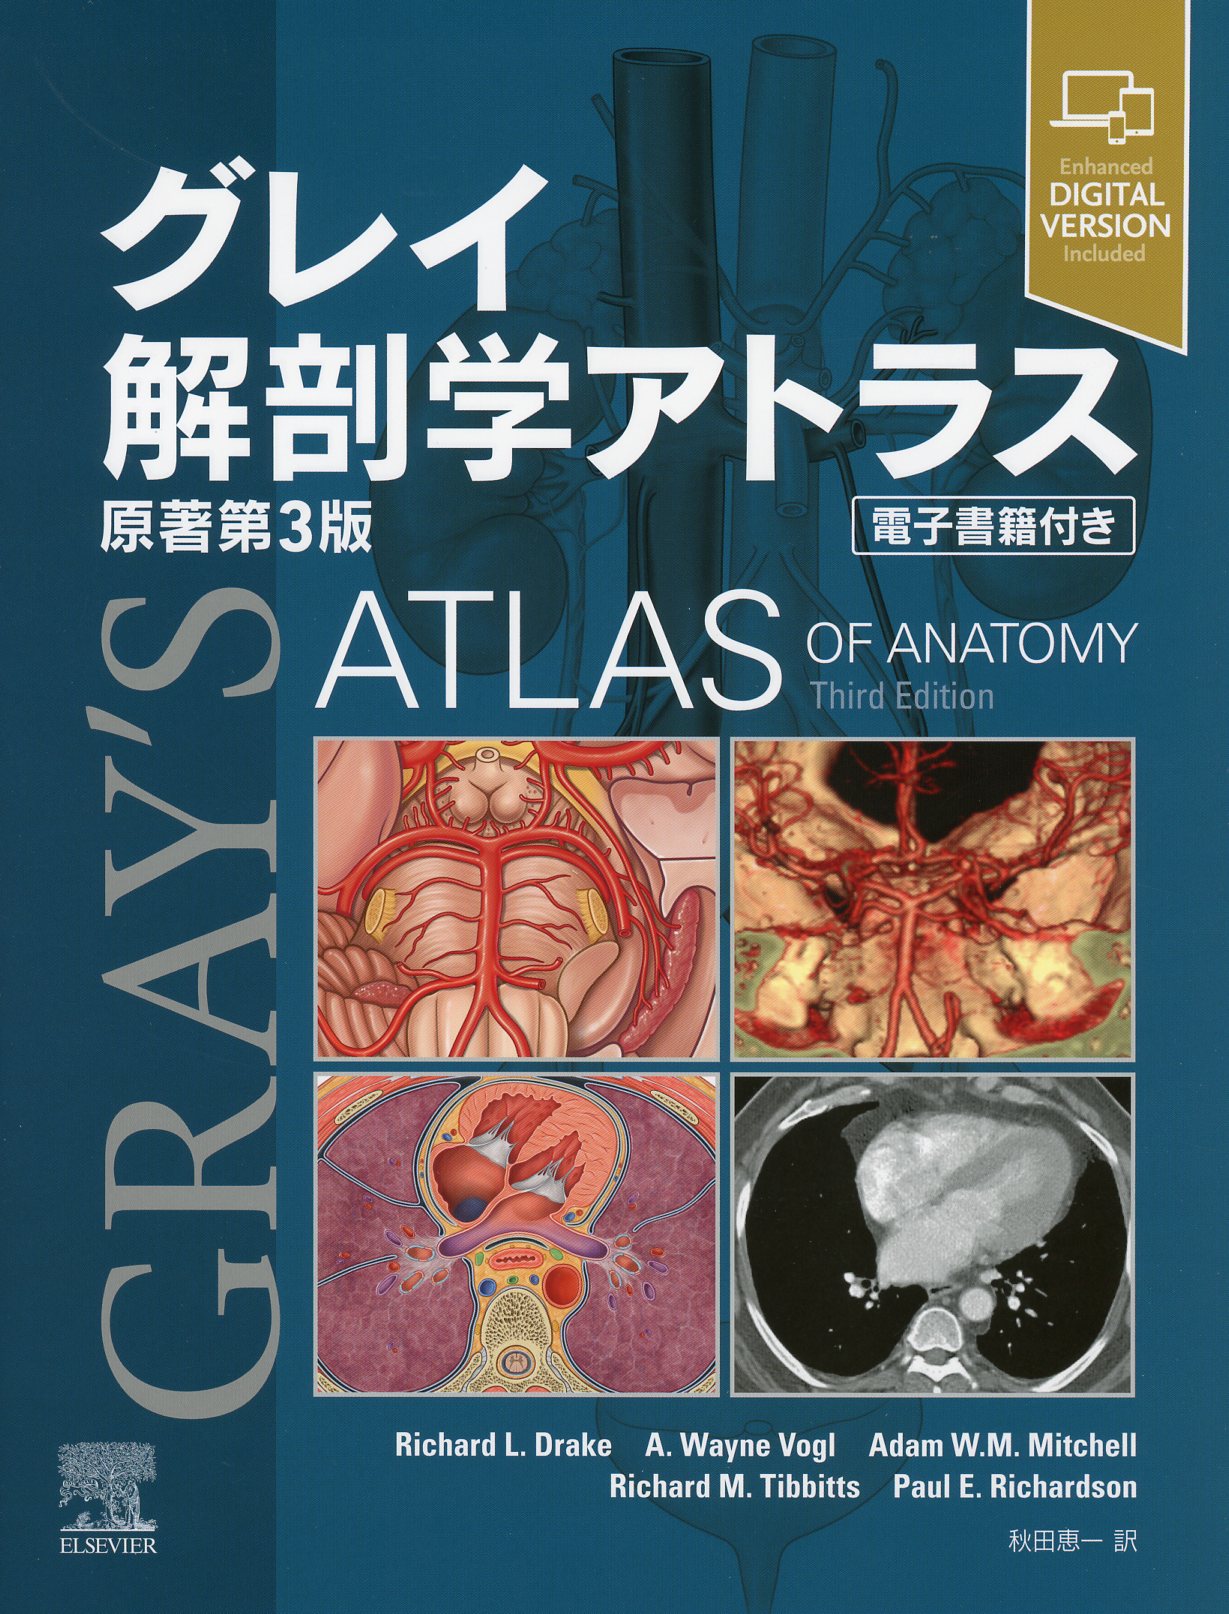 少し豊富な贈り物 分冊解剖学アトラス 2 II: (内臓) 健康・医学